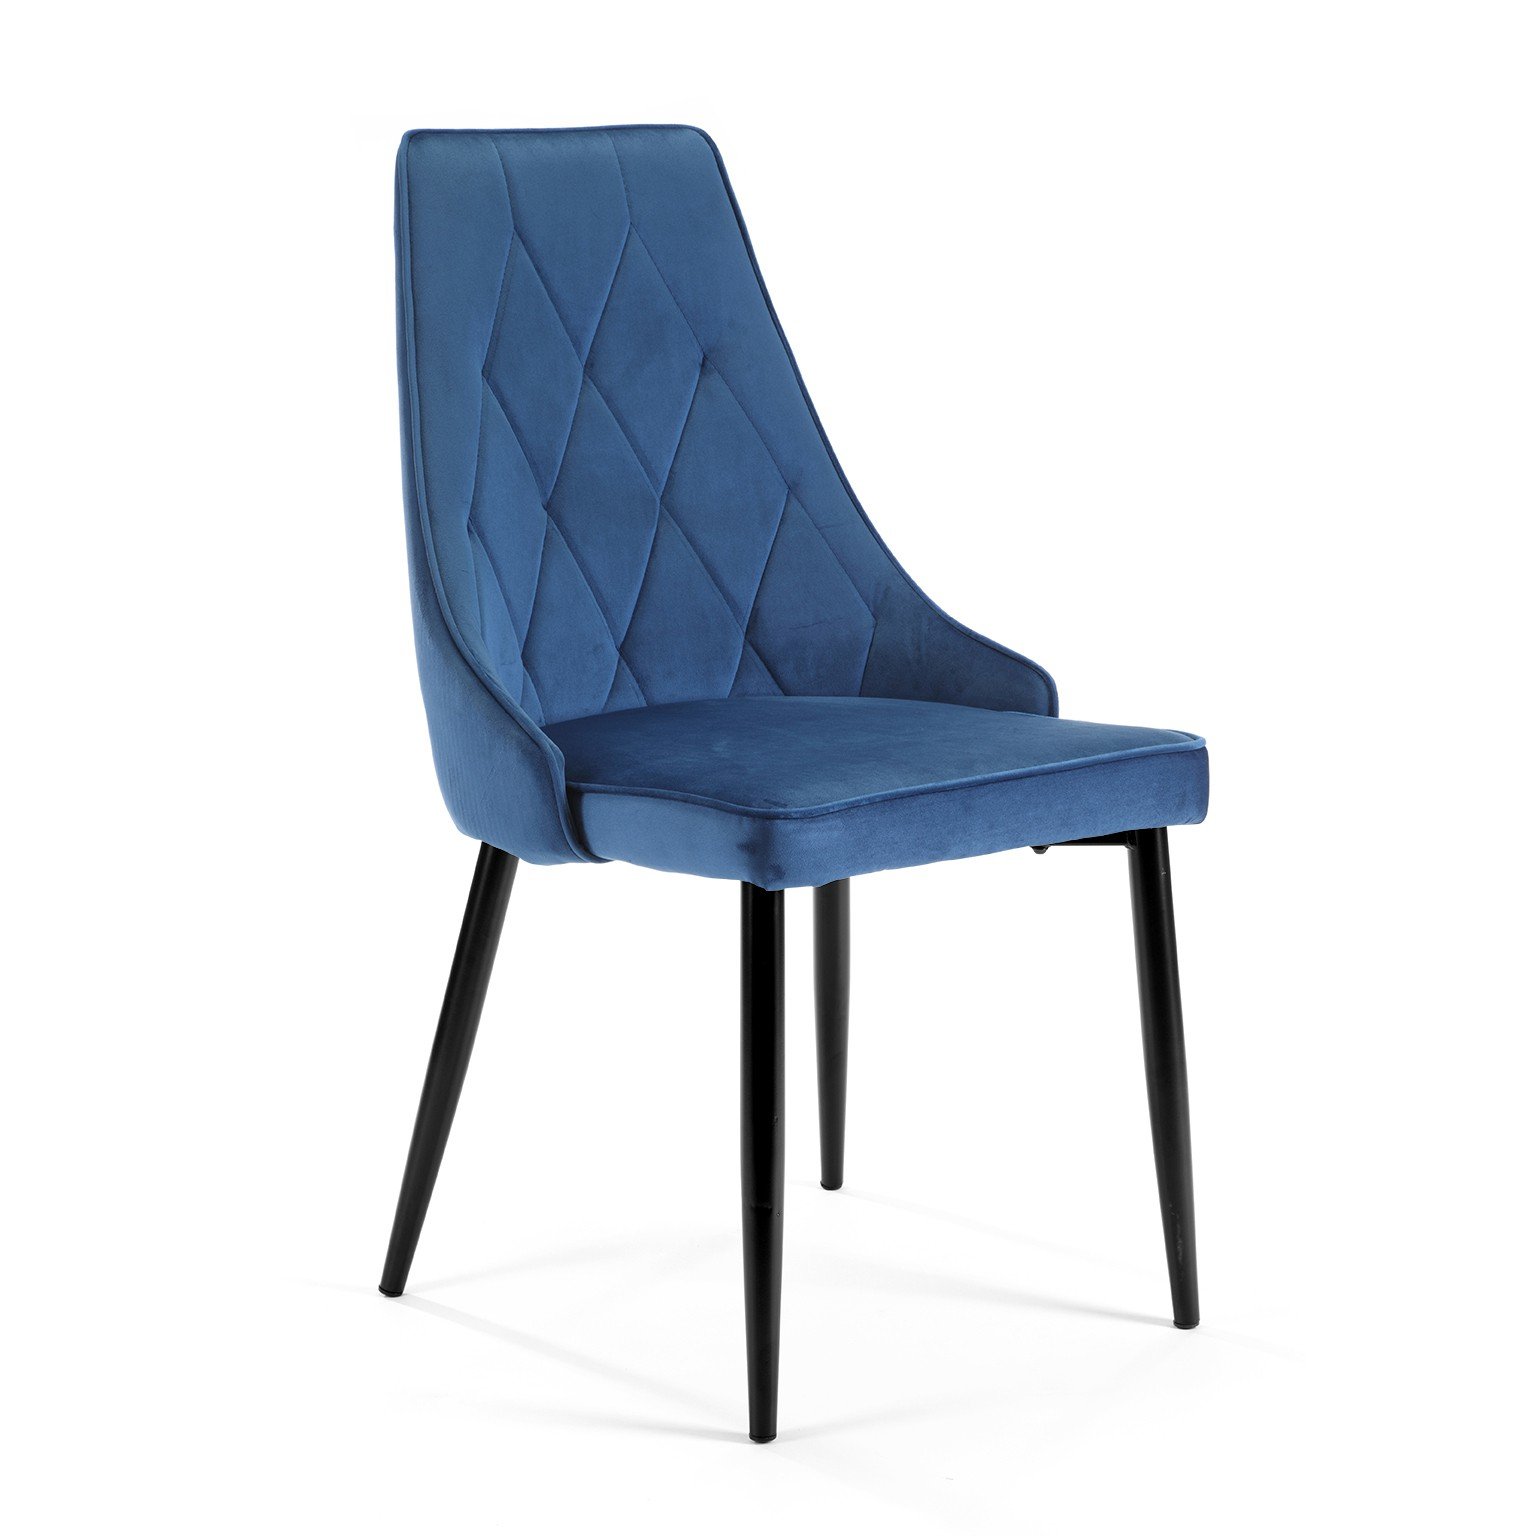 4-rių kėdžių komplektas SJ.054, tamsiai mėlynas